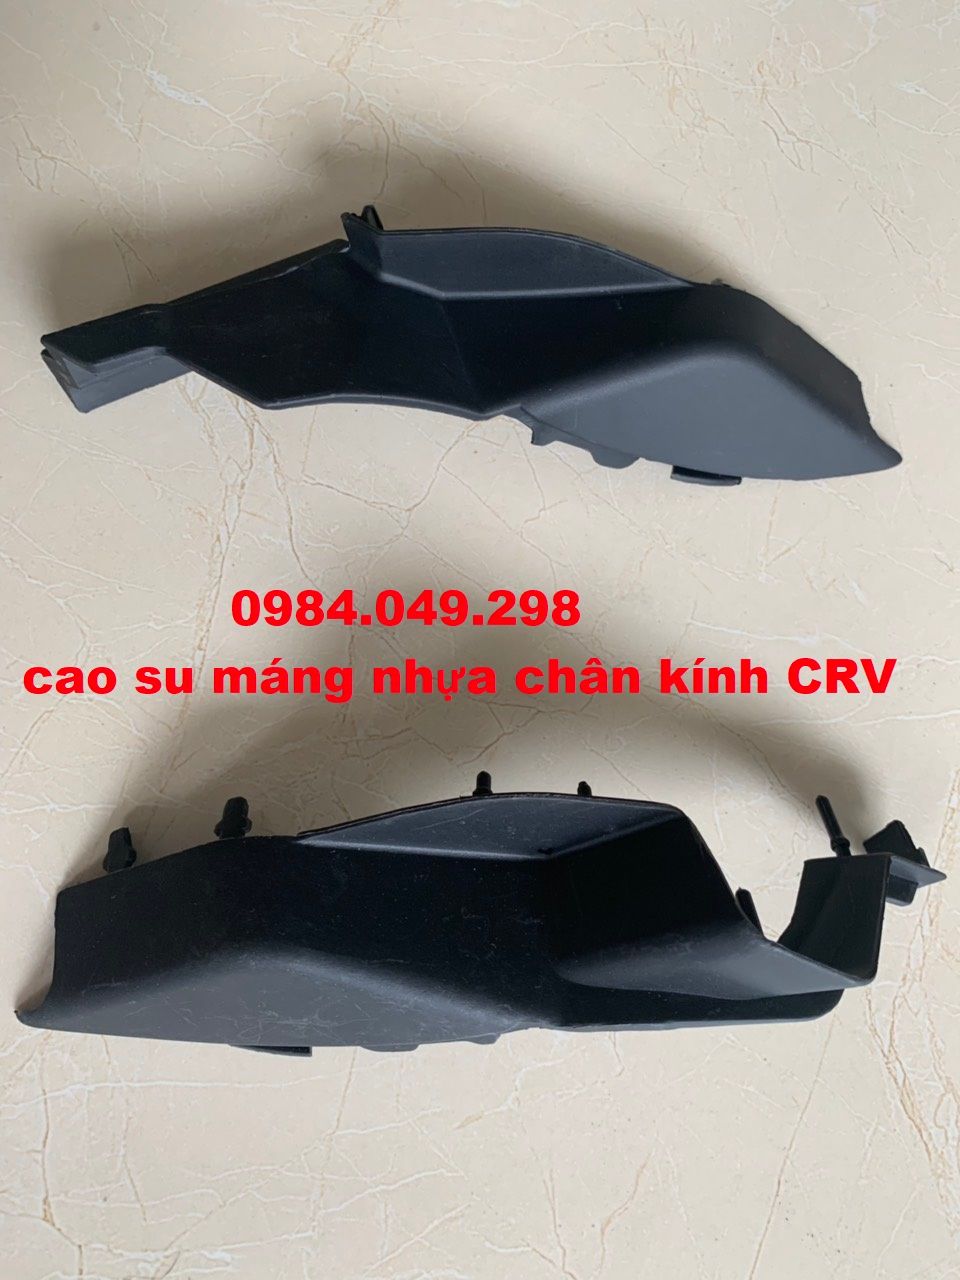 Cao su máng nhựa chân kính / ốp chân kính chắn gió Honda CRV 2007 - 2010 - hàng nhập khẩu chính hãng